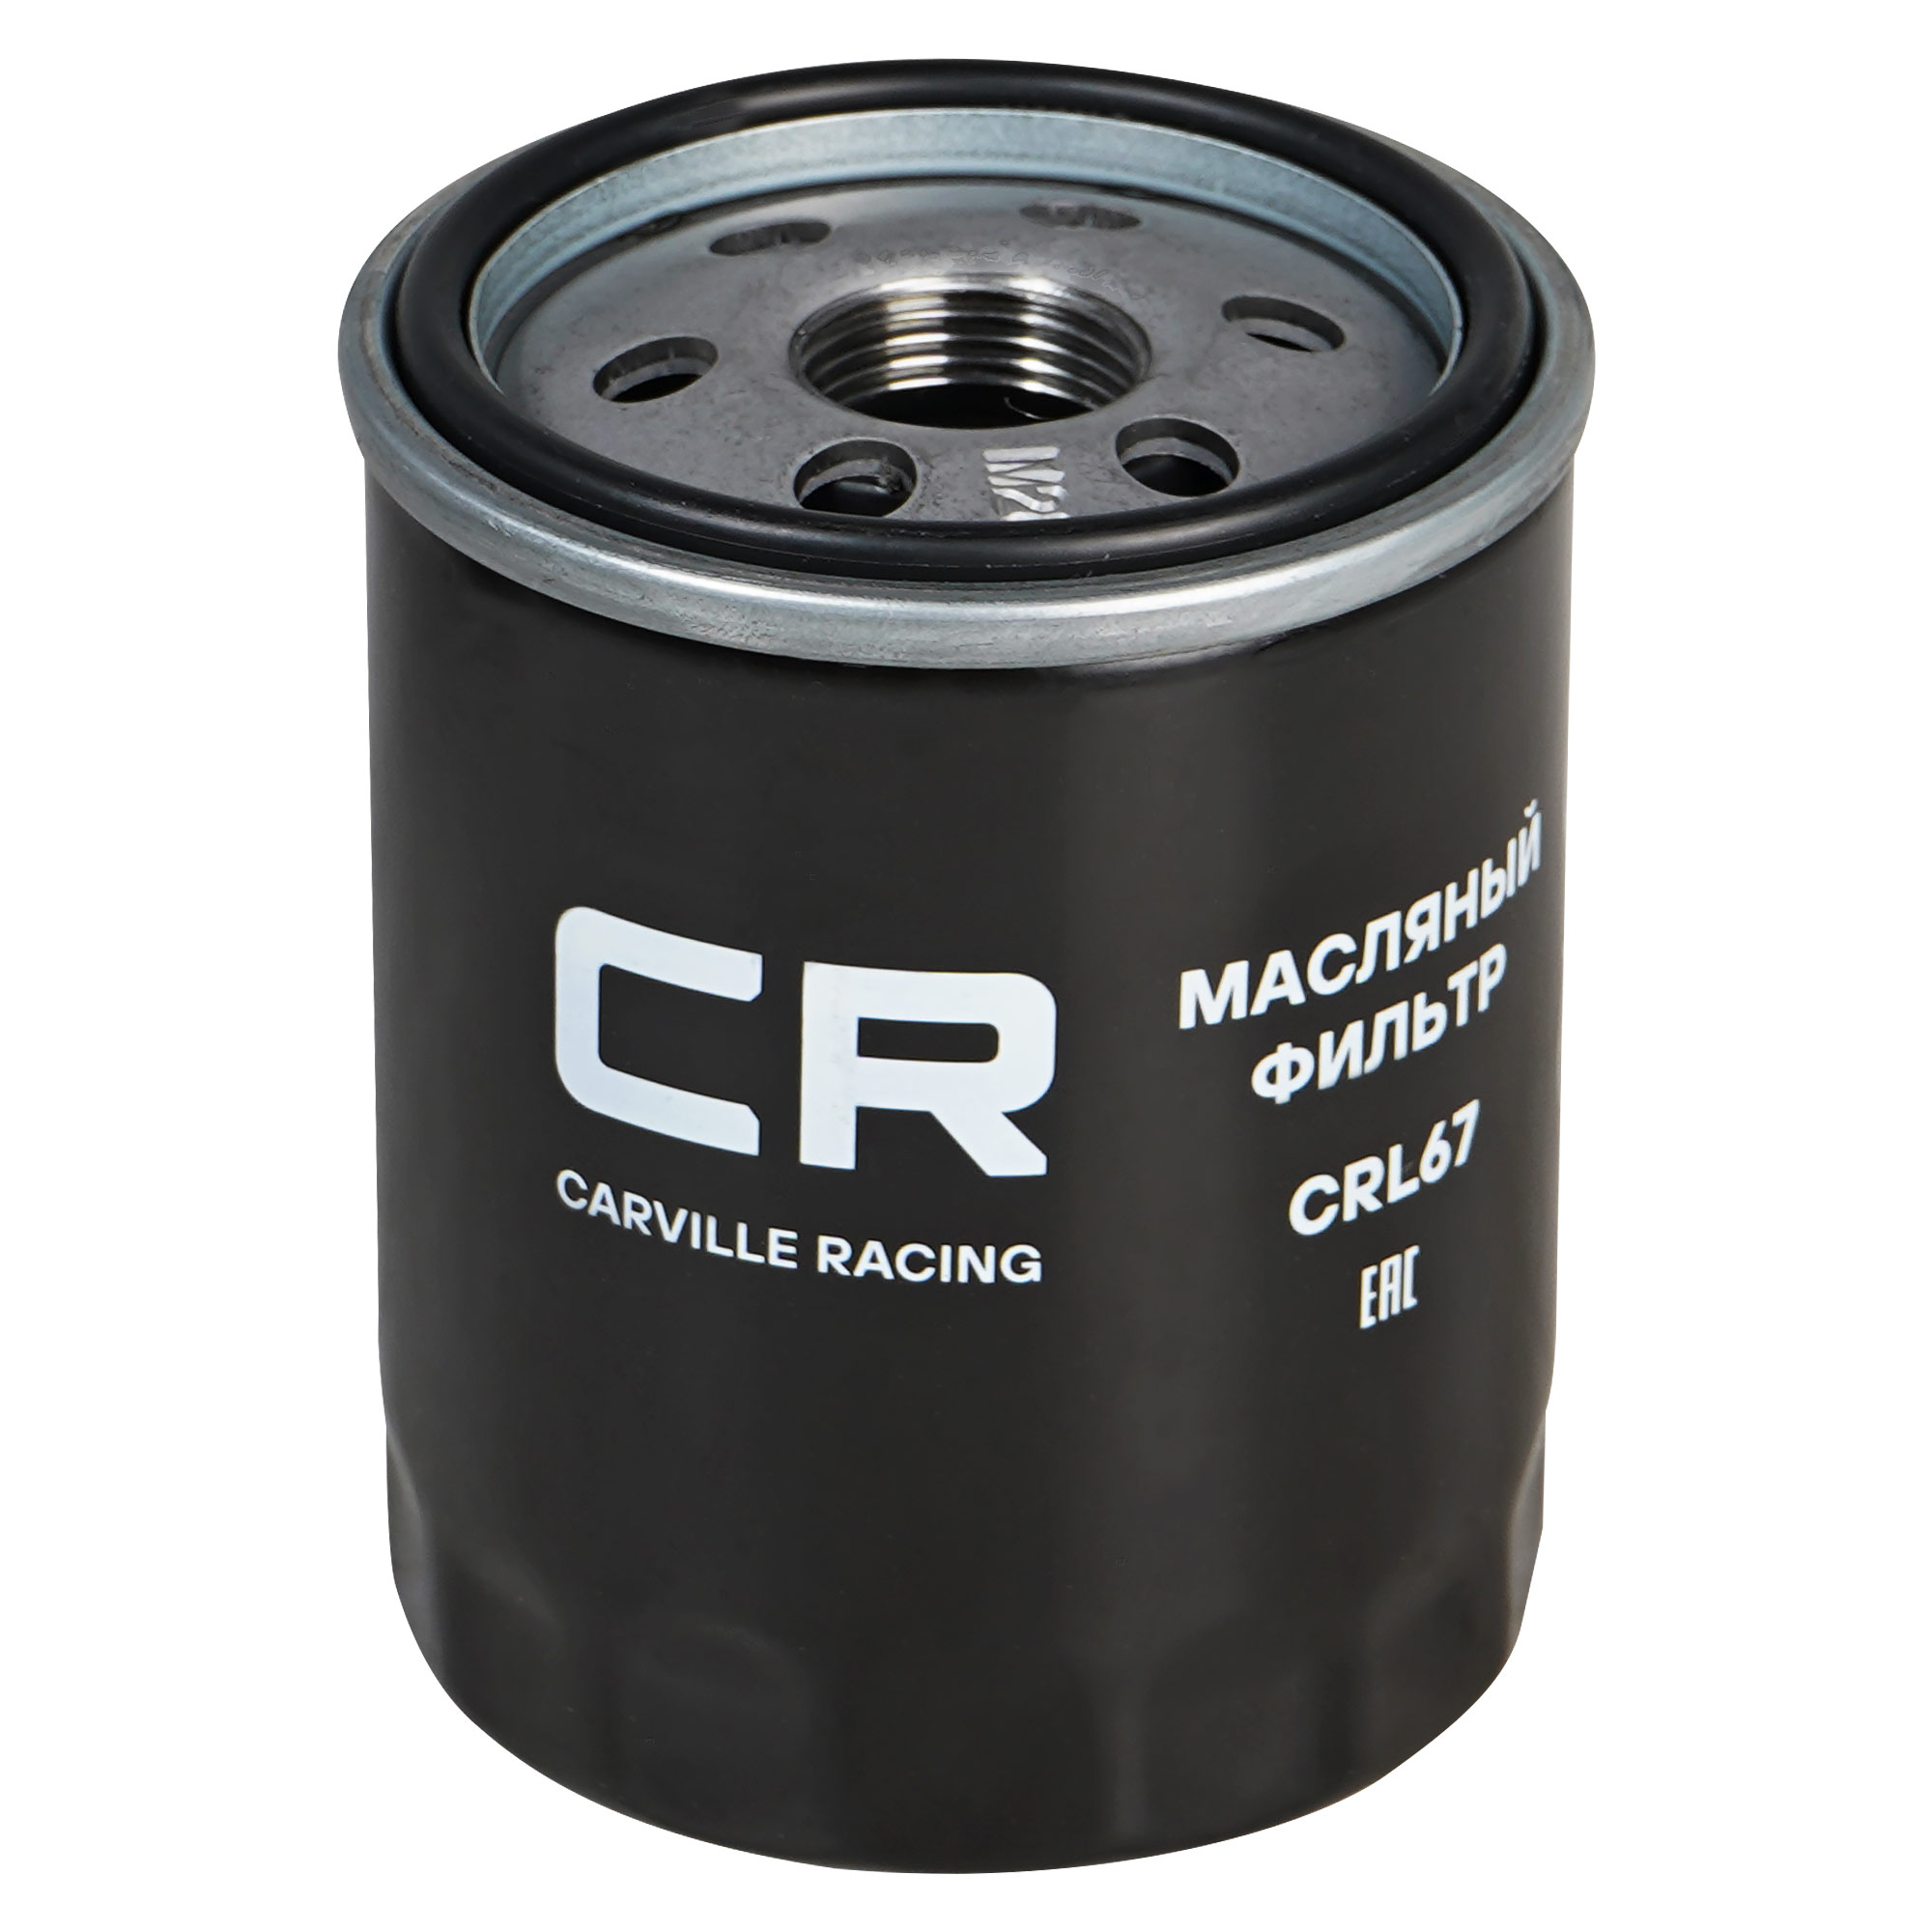 CARVILLE RACING CRL67 Фильтр для а/м mitsubishi lancer (08 ) 1.5i/colt (04 ) 1.1 1.5i (масл.) (crl67) купить в Самаре